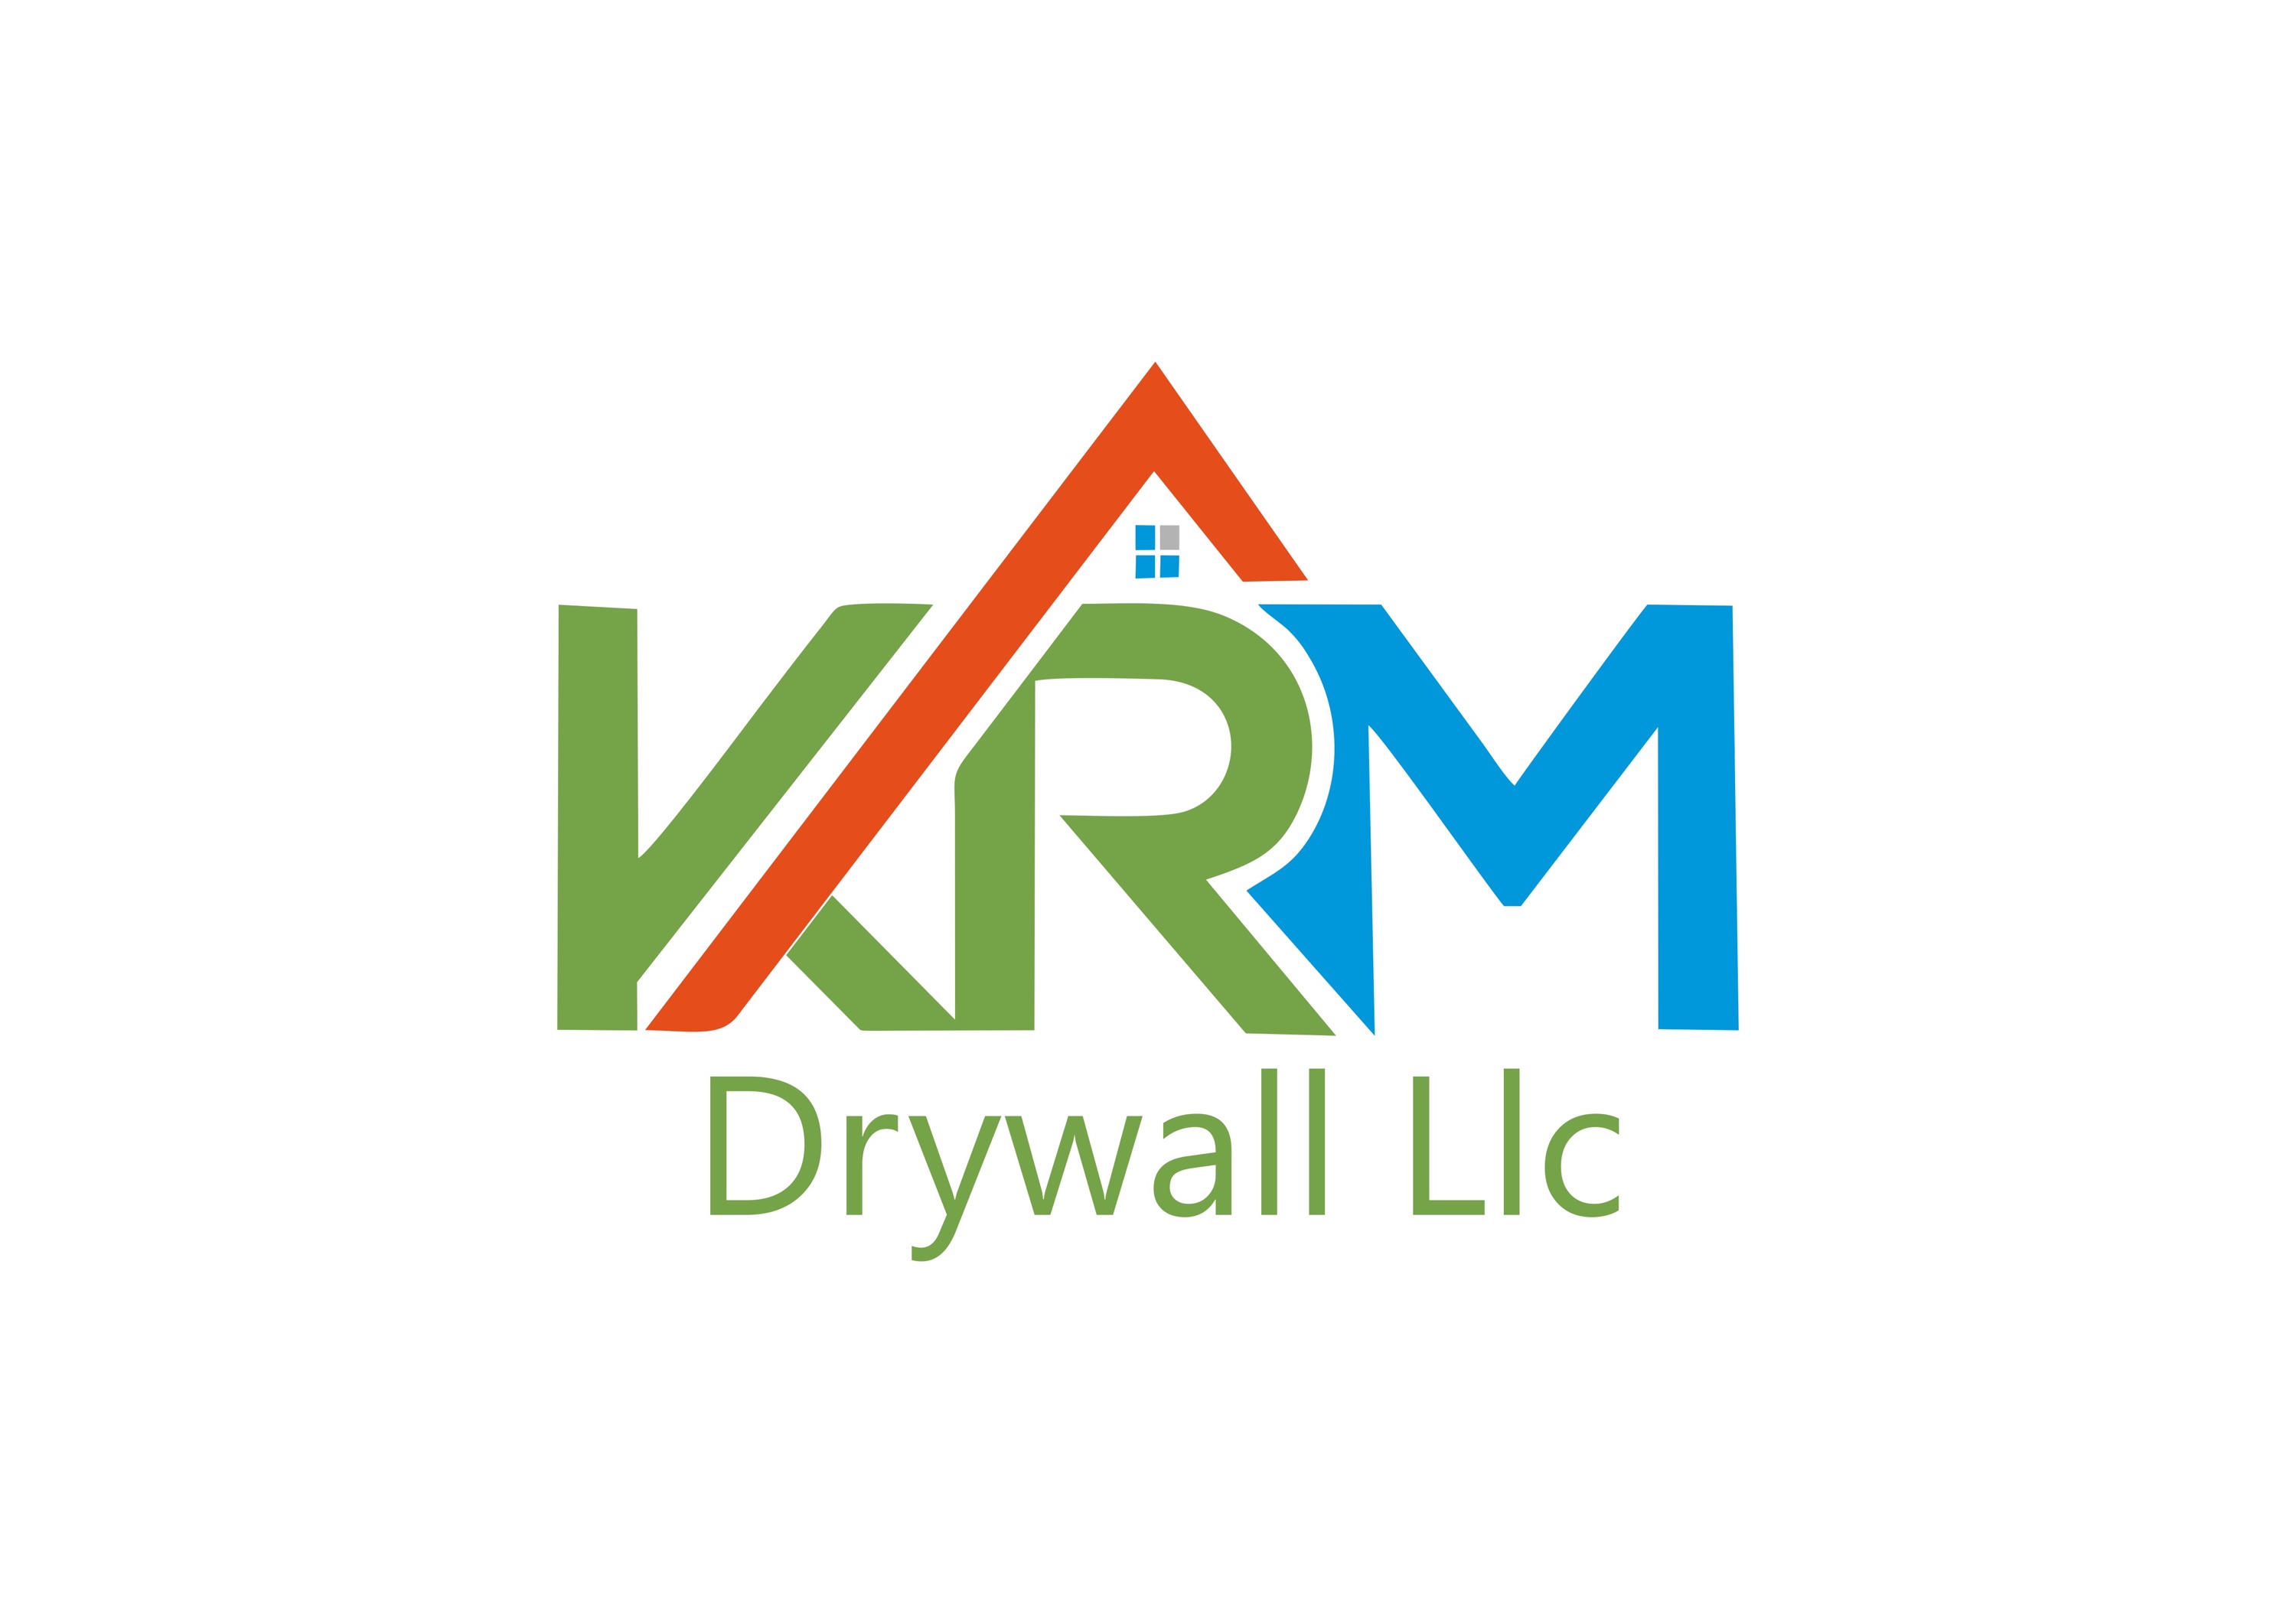 KRM Drywall LLC Logo